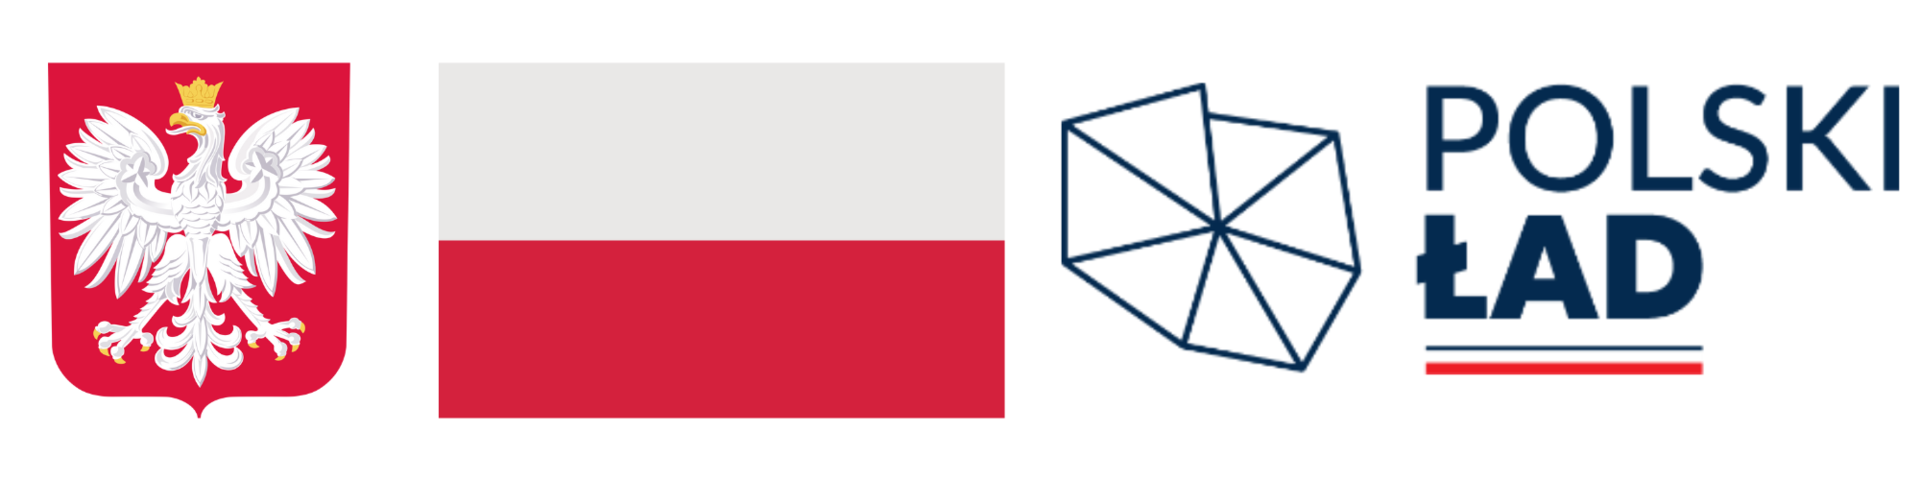 Polski ład logotypy.png